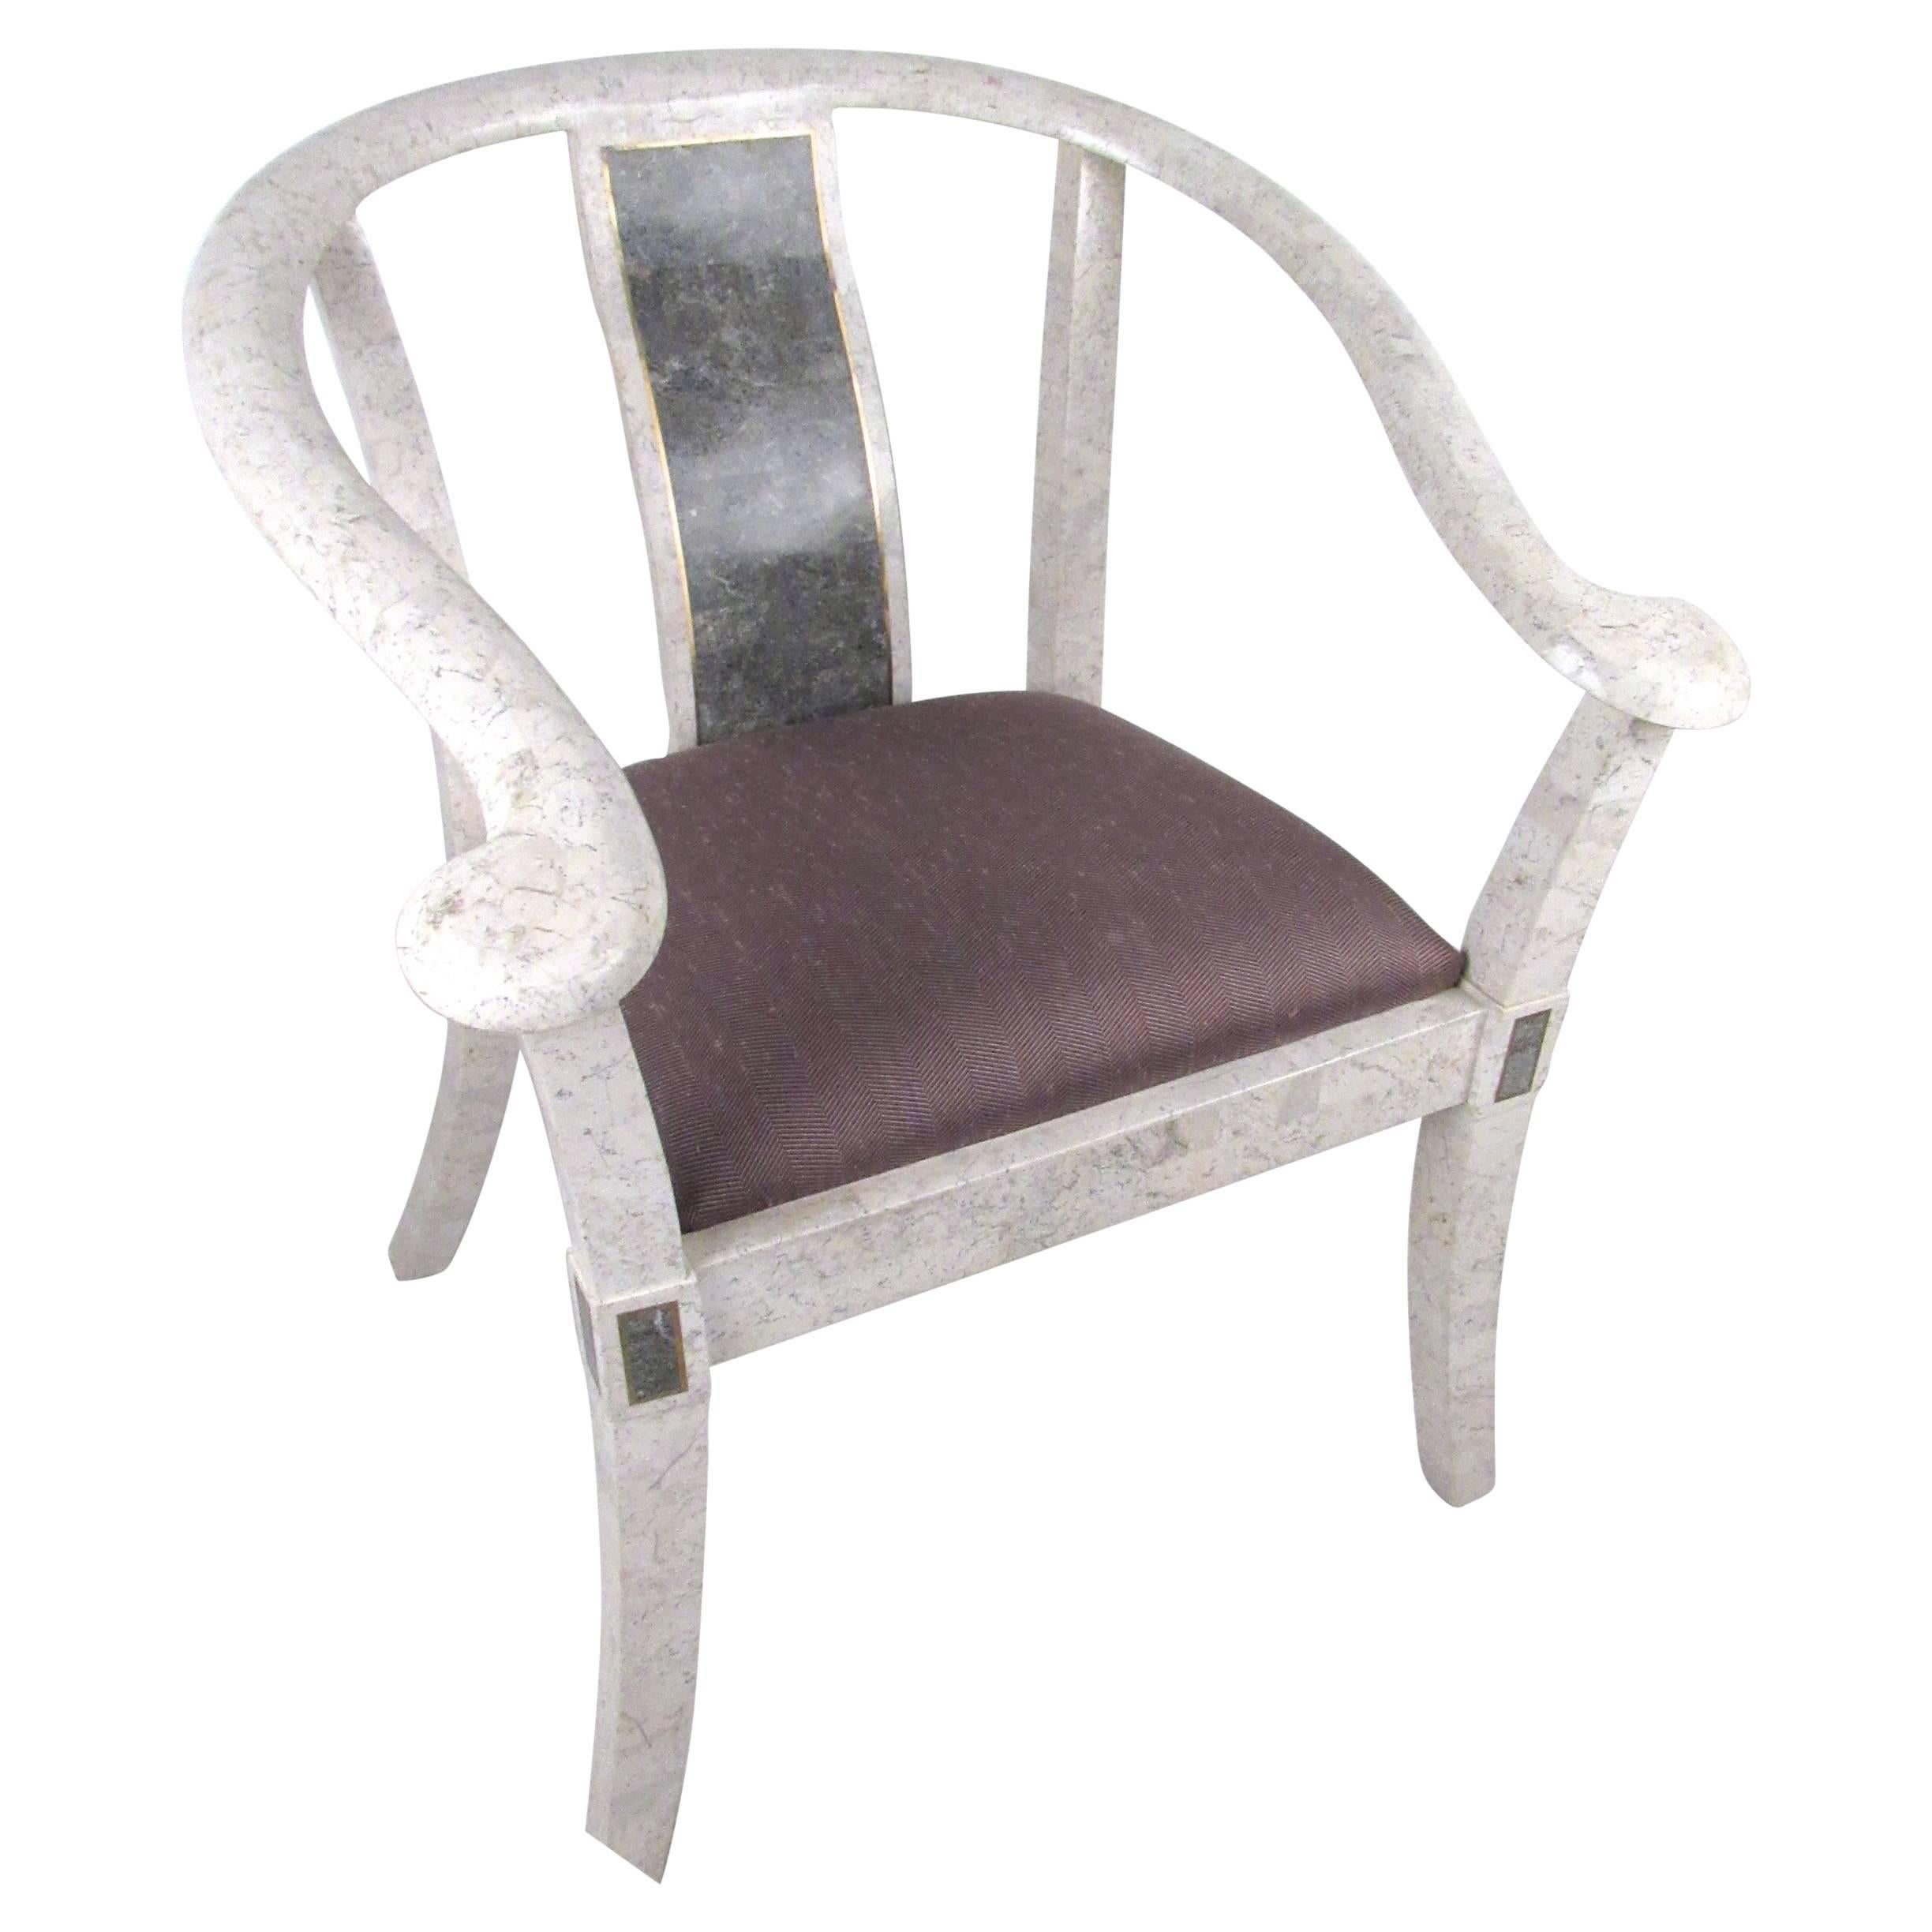 Cette chaise d'appoint vintage unique présente un mélange parfait d'incrustations de marbre tessellé et de laiton, ainsi qu'une forme fluide unique. Combinant à merveille style et confort, cette exquise chaise de style Maitland Smith constitue un